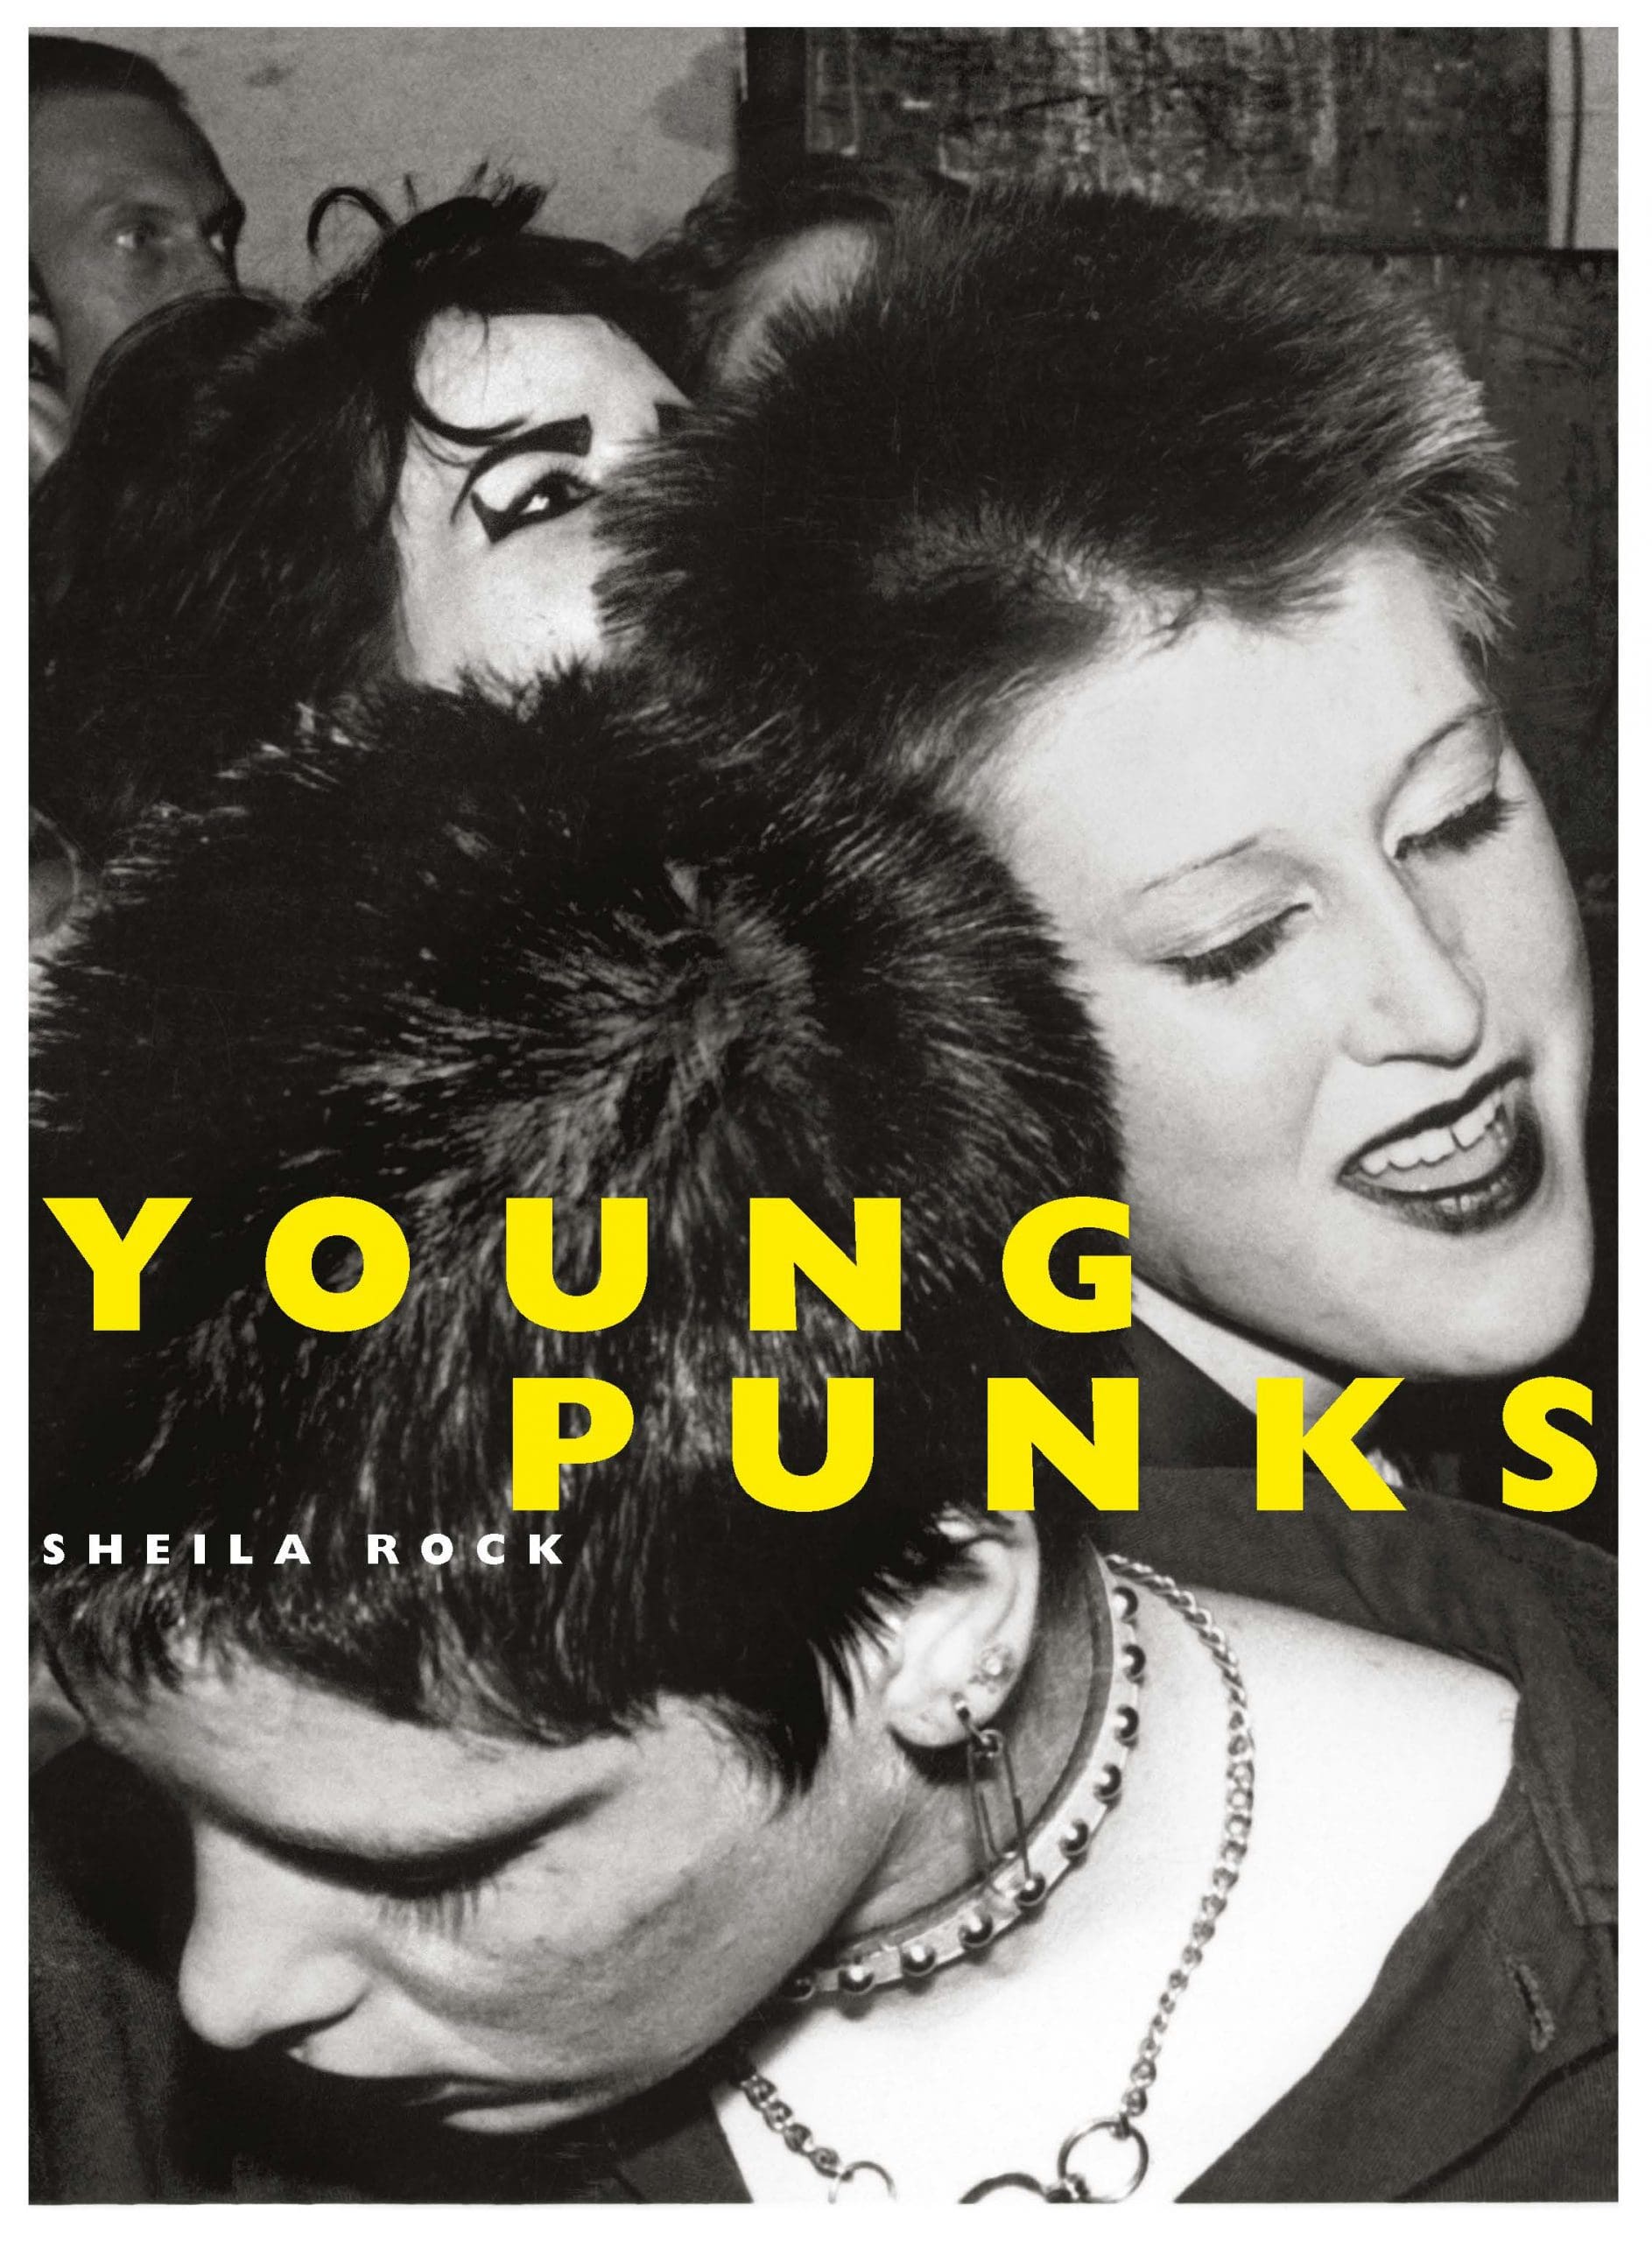 Shelia Rocks – Young Punks